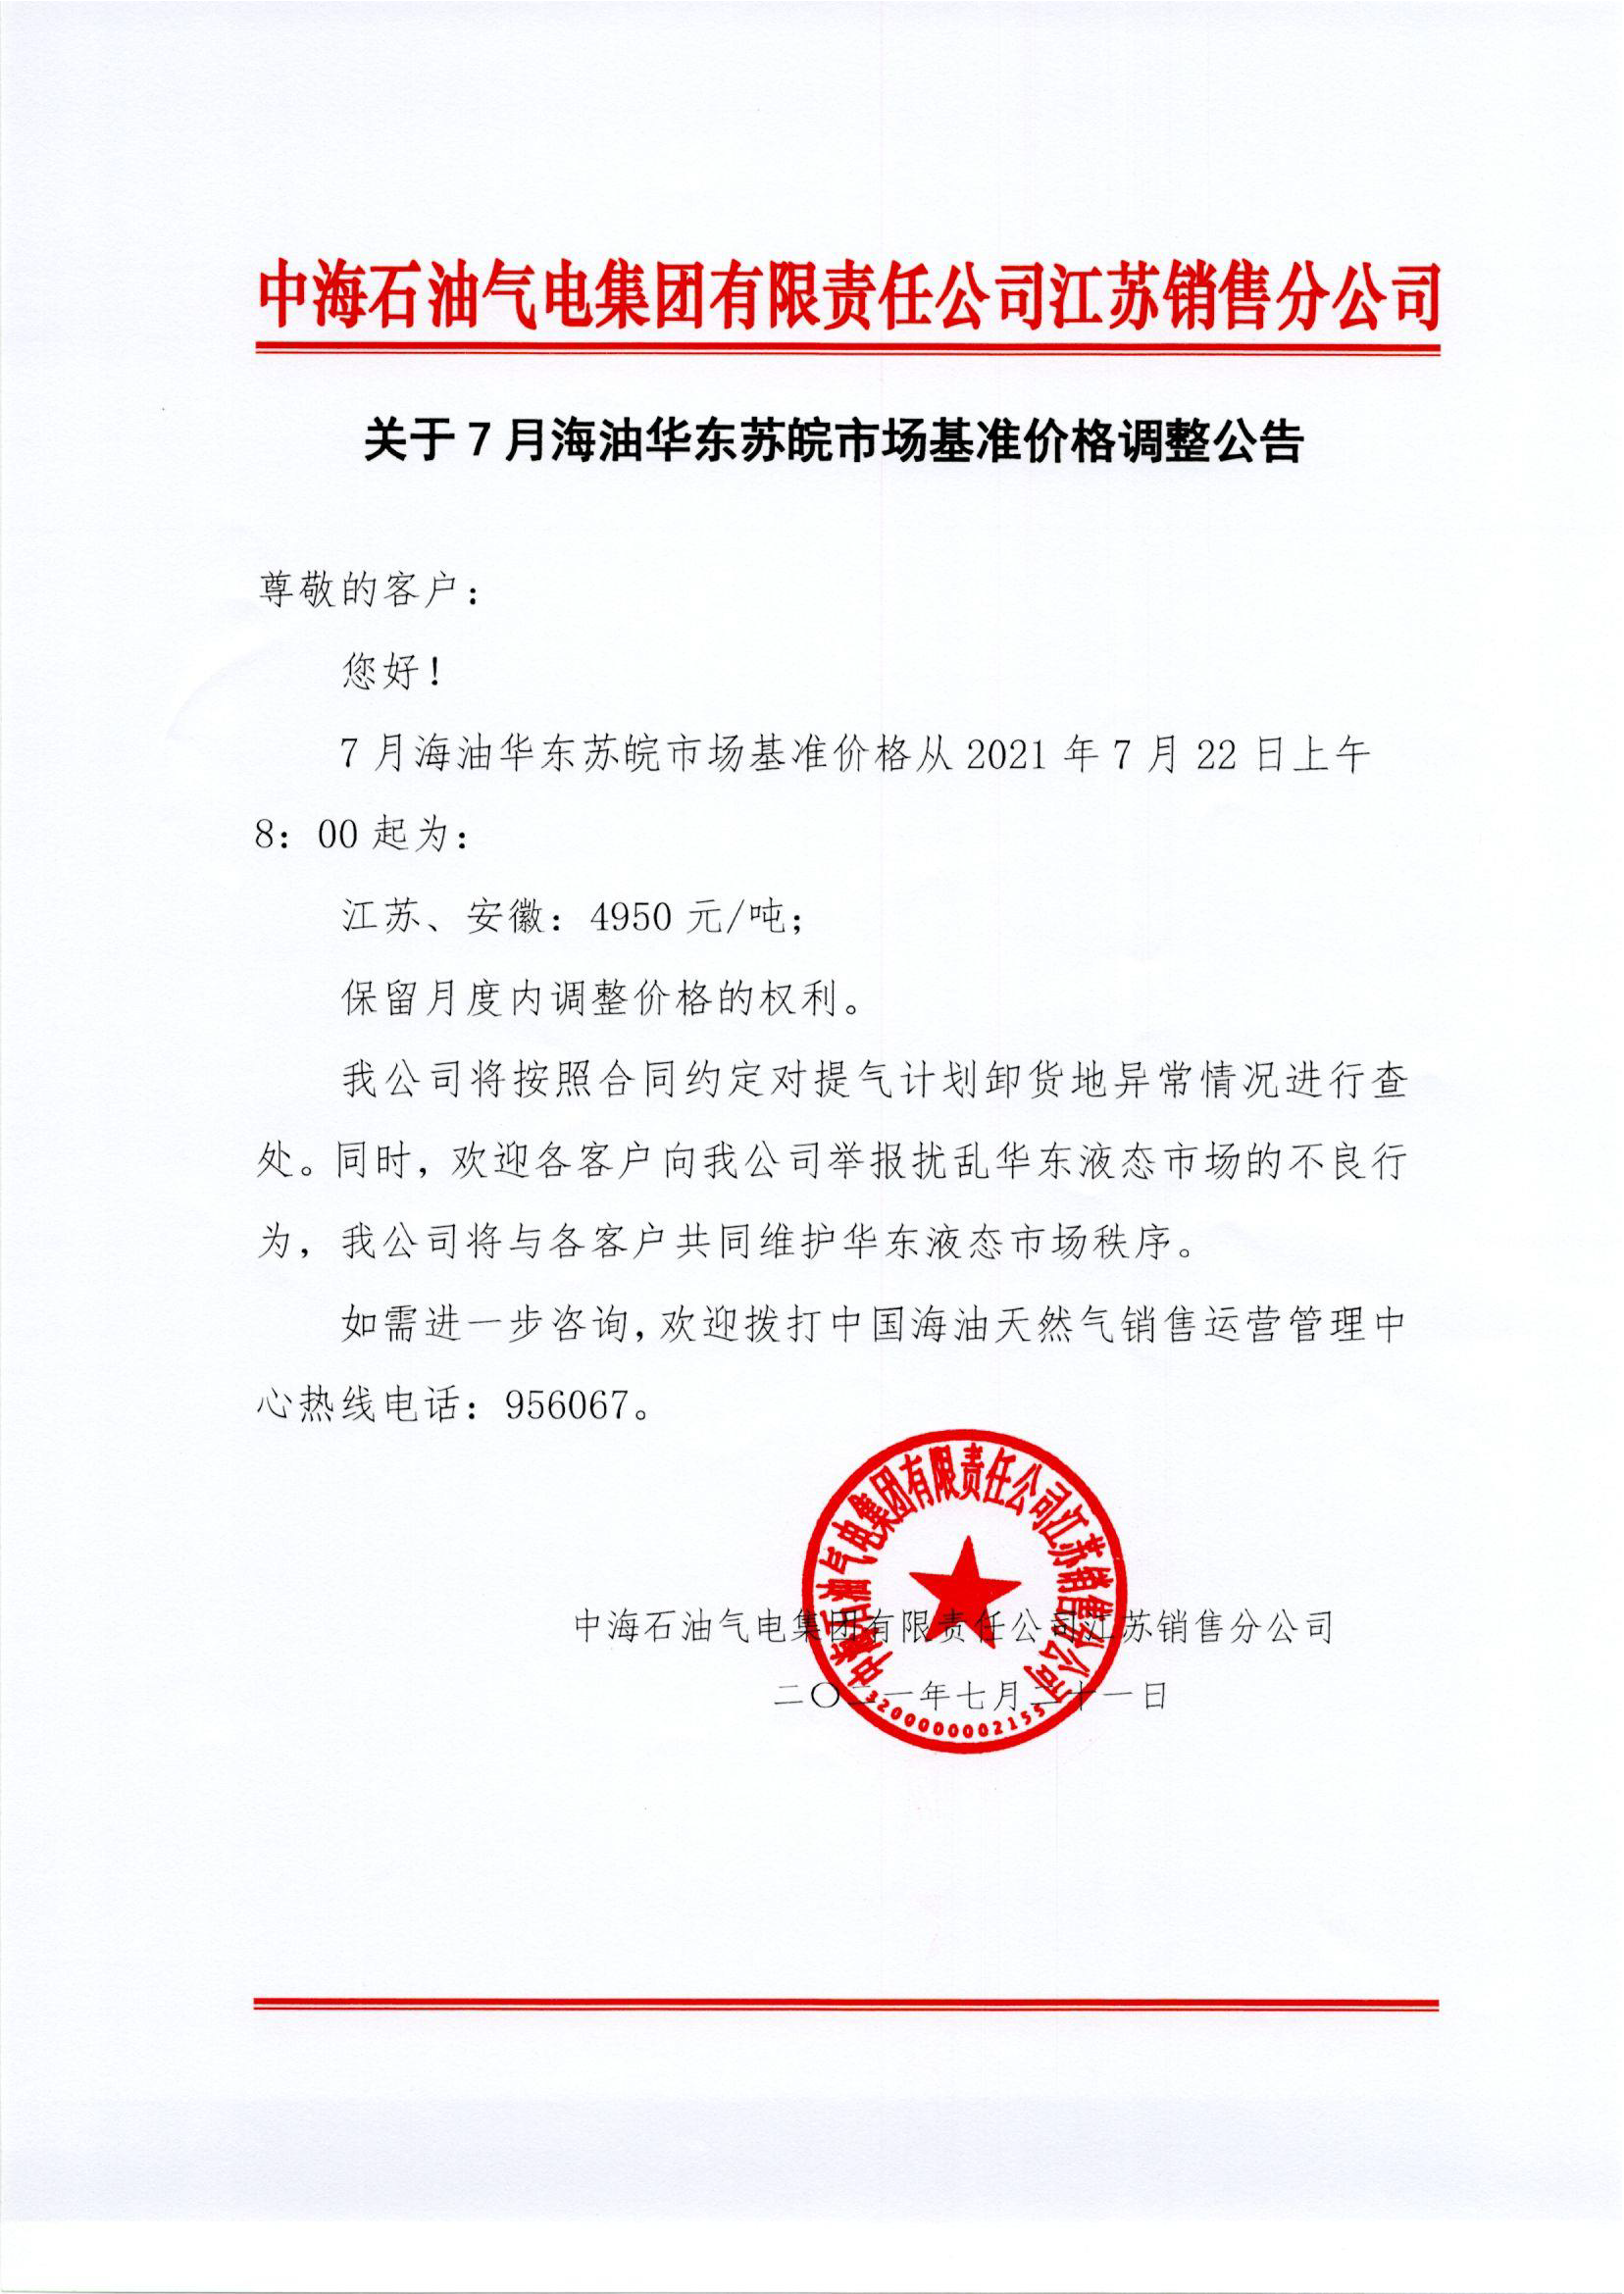 中海油苏销关于7月22日华东苏皖市场价格调整公告0722.png